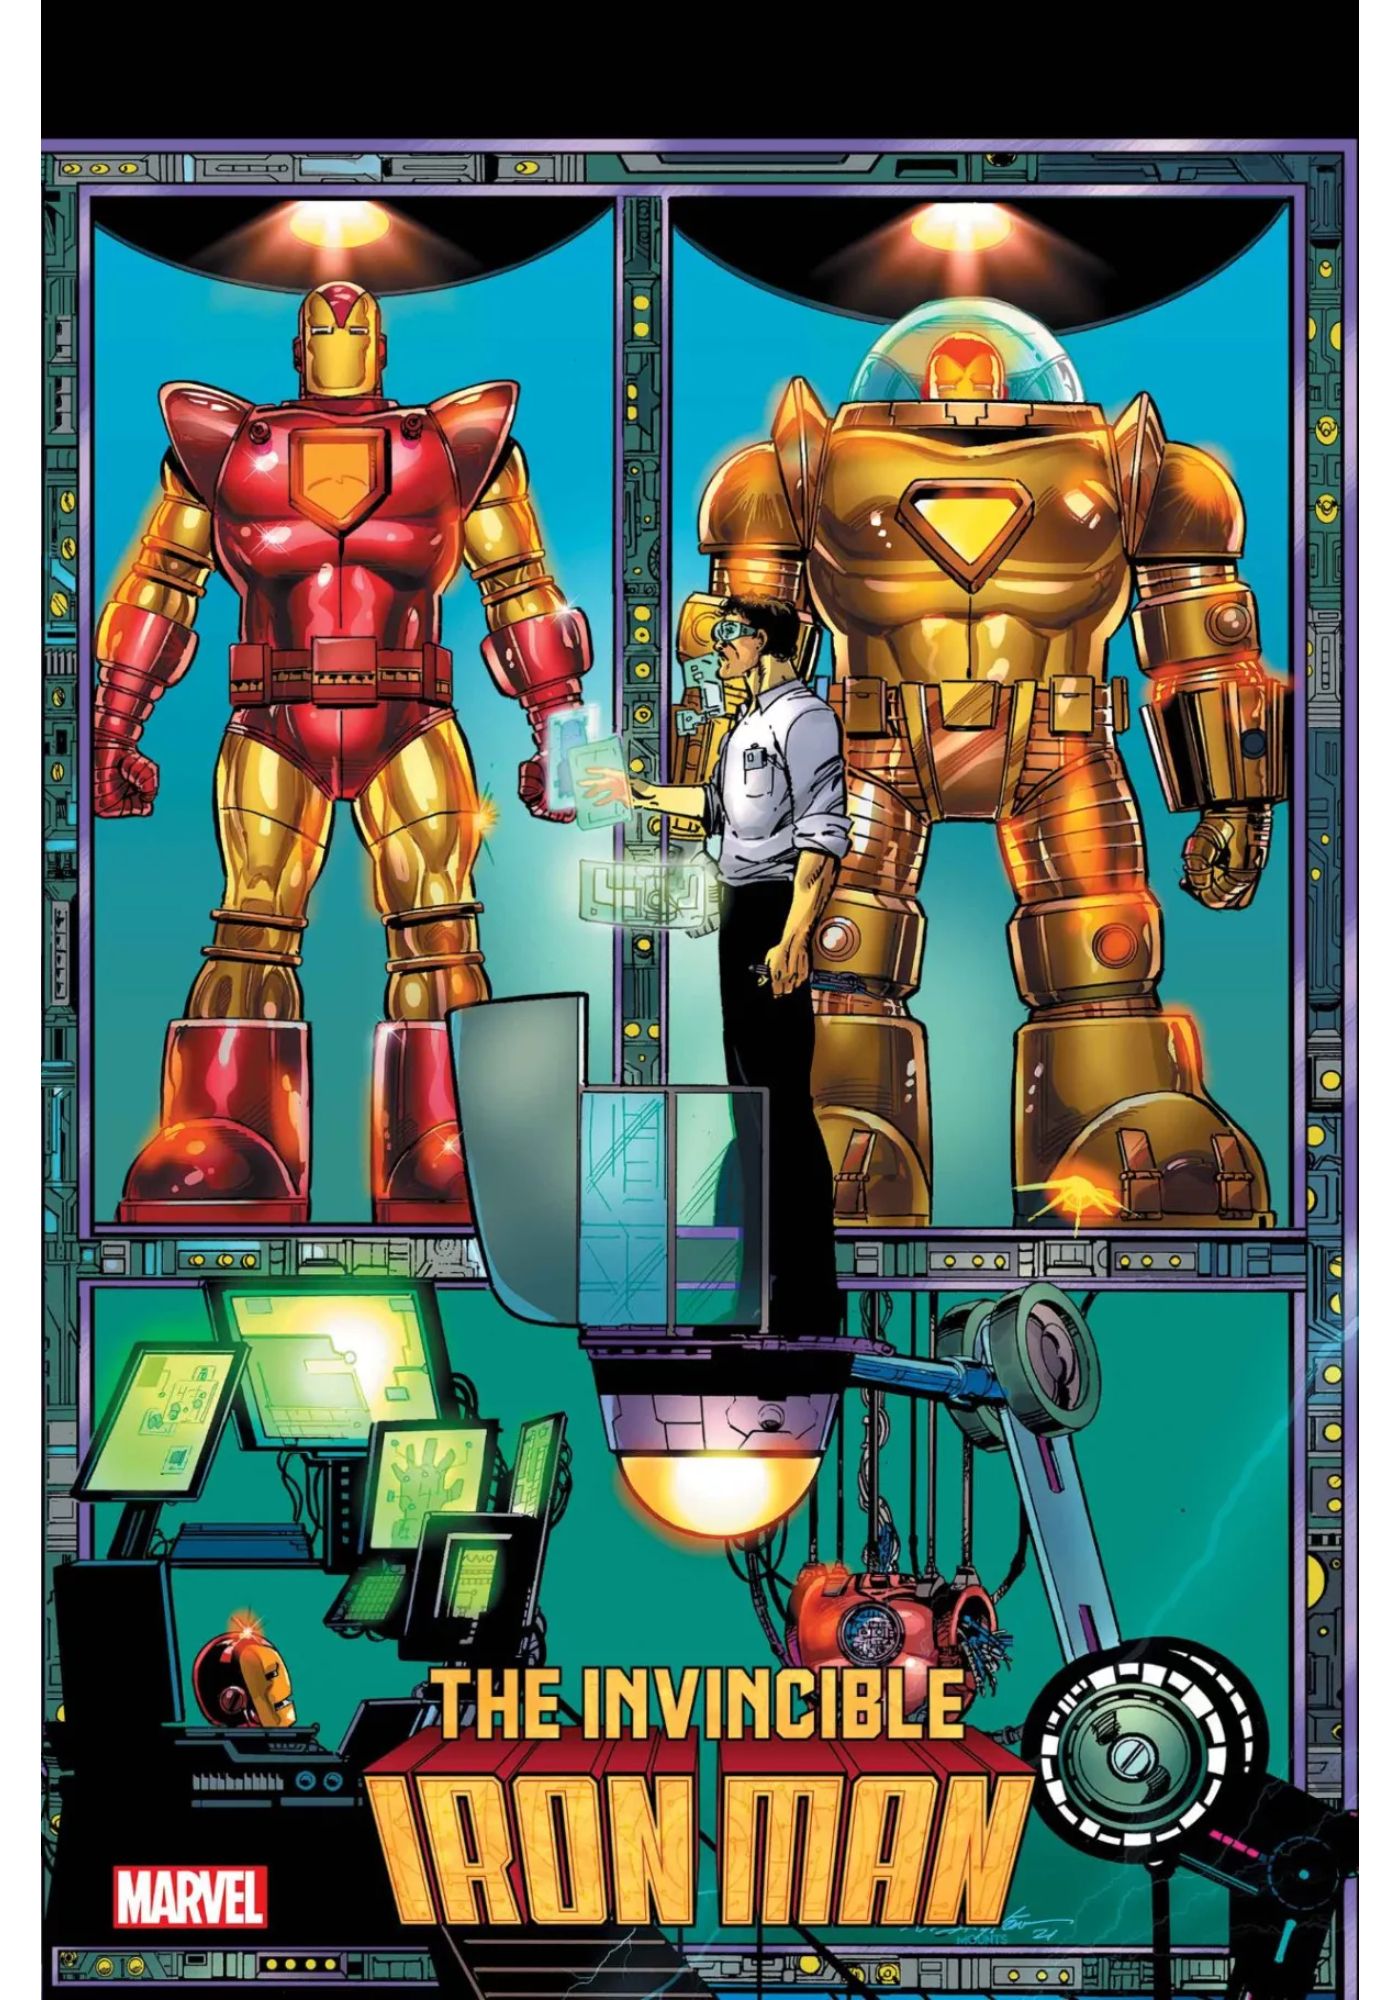 Iron Man Cover Art - Feilong Villain